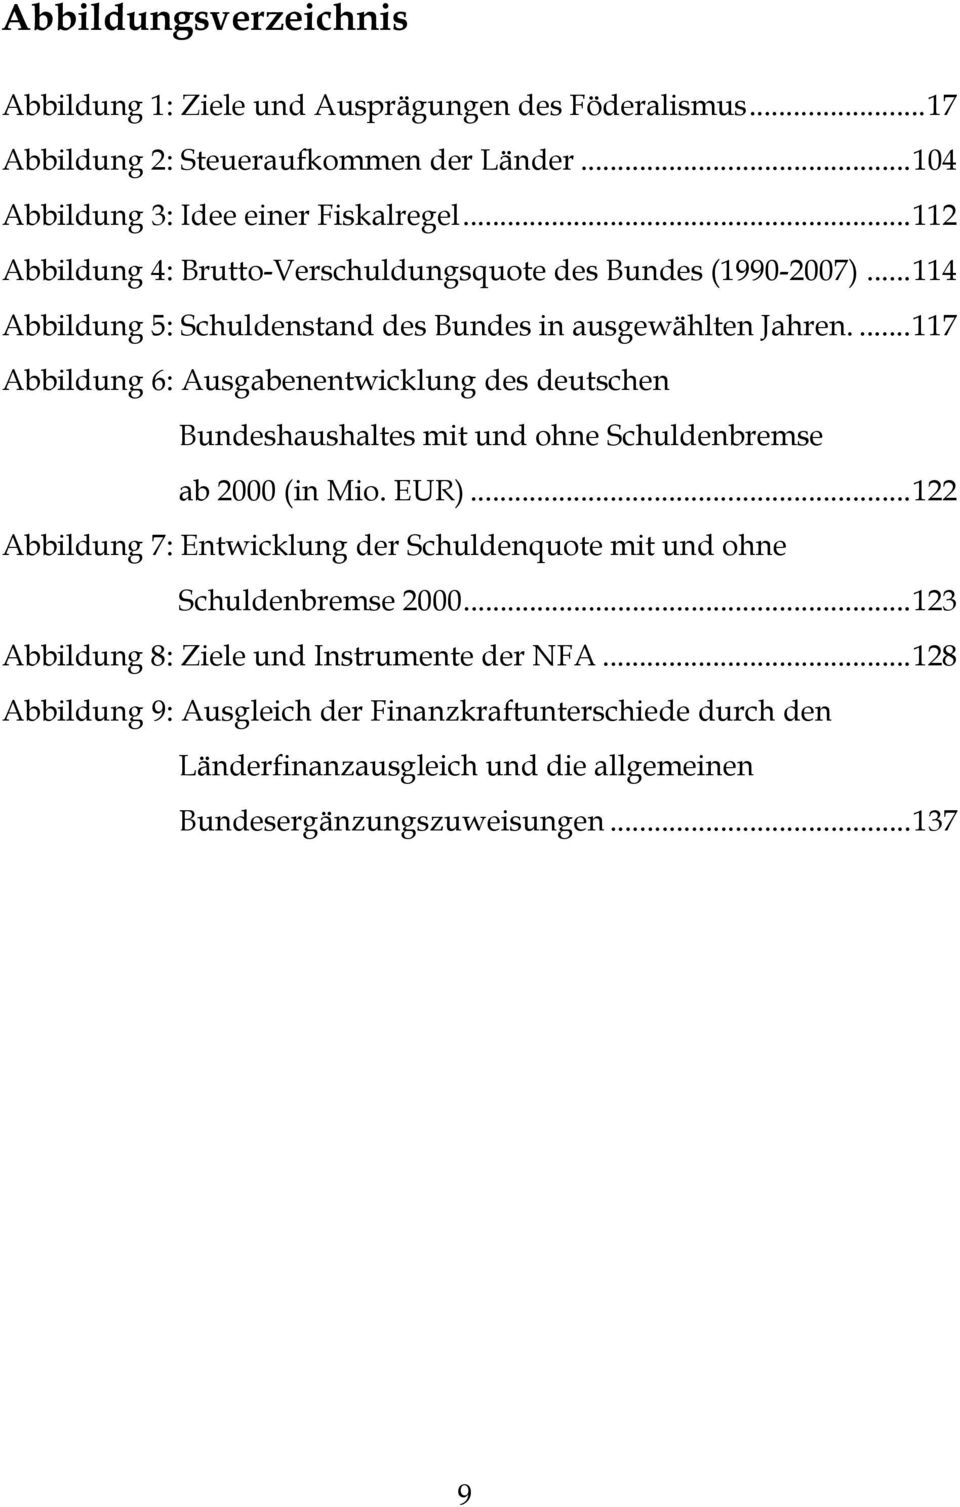 ...117 Abbildung 6: Ausgabenentwicklung des deutschen Bundeshaushaltes mit und ohne Schuldenbremse ab 2000 (in Mio. EUR).